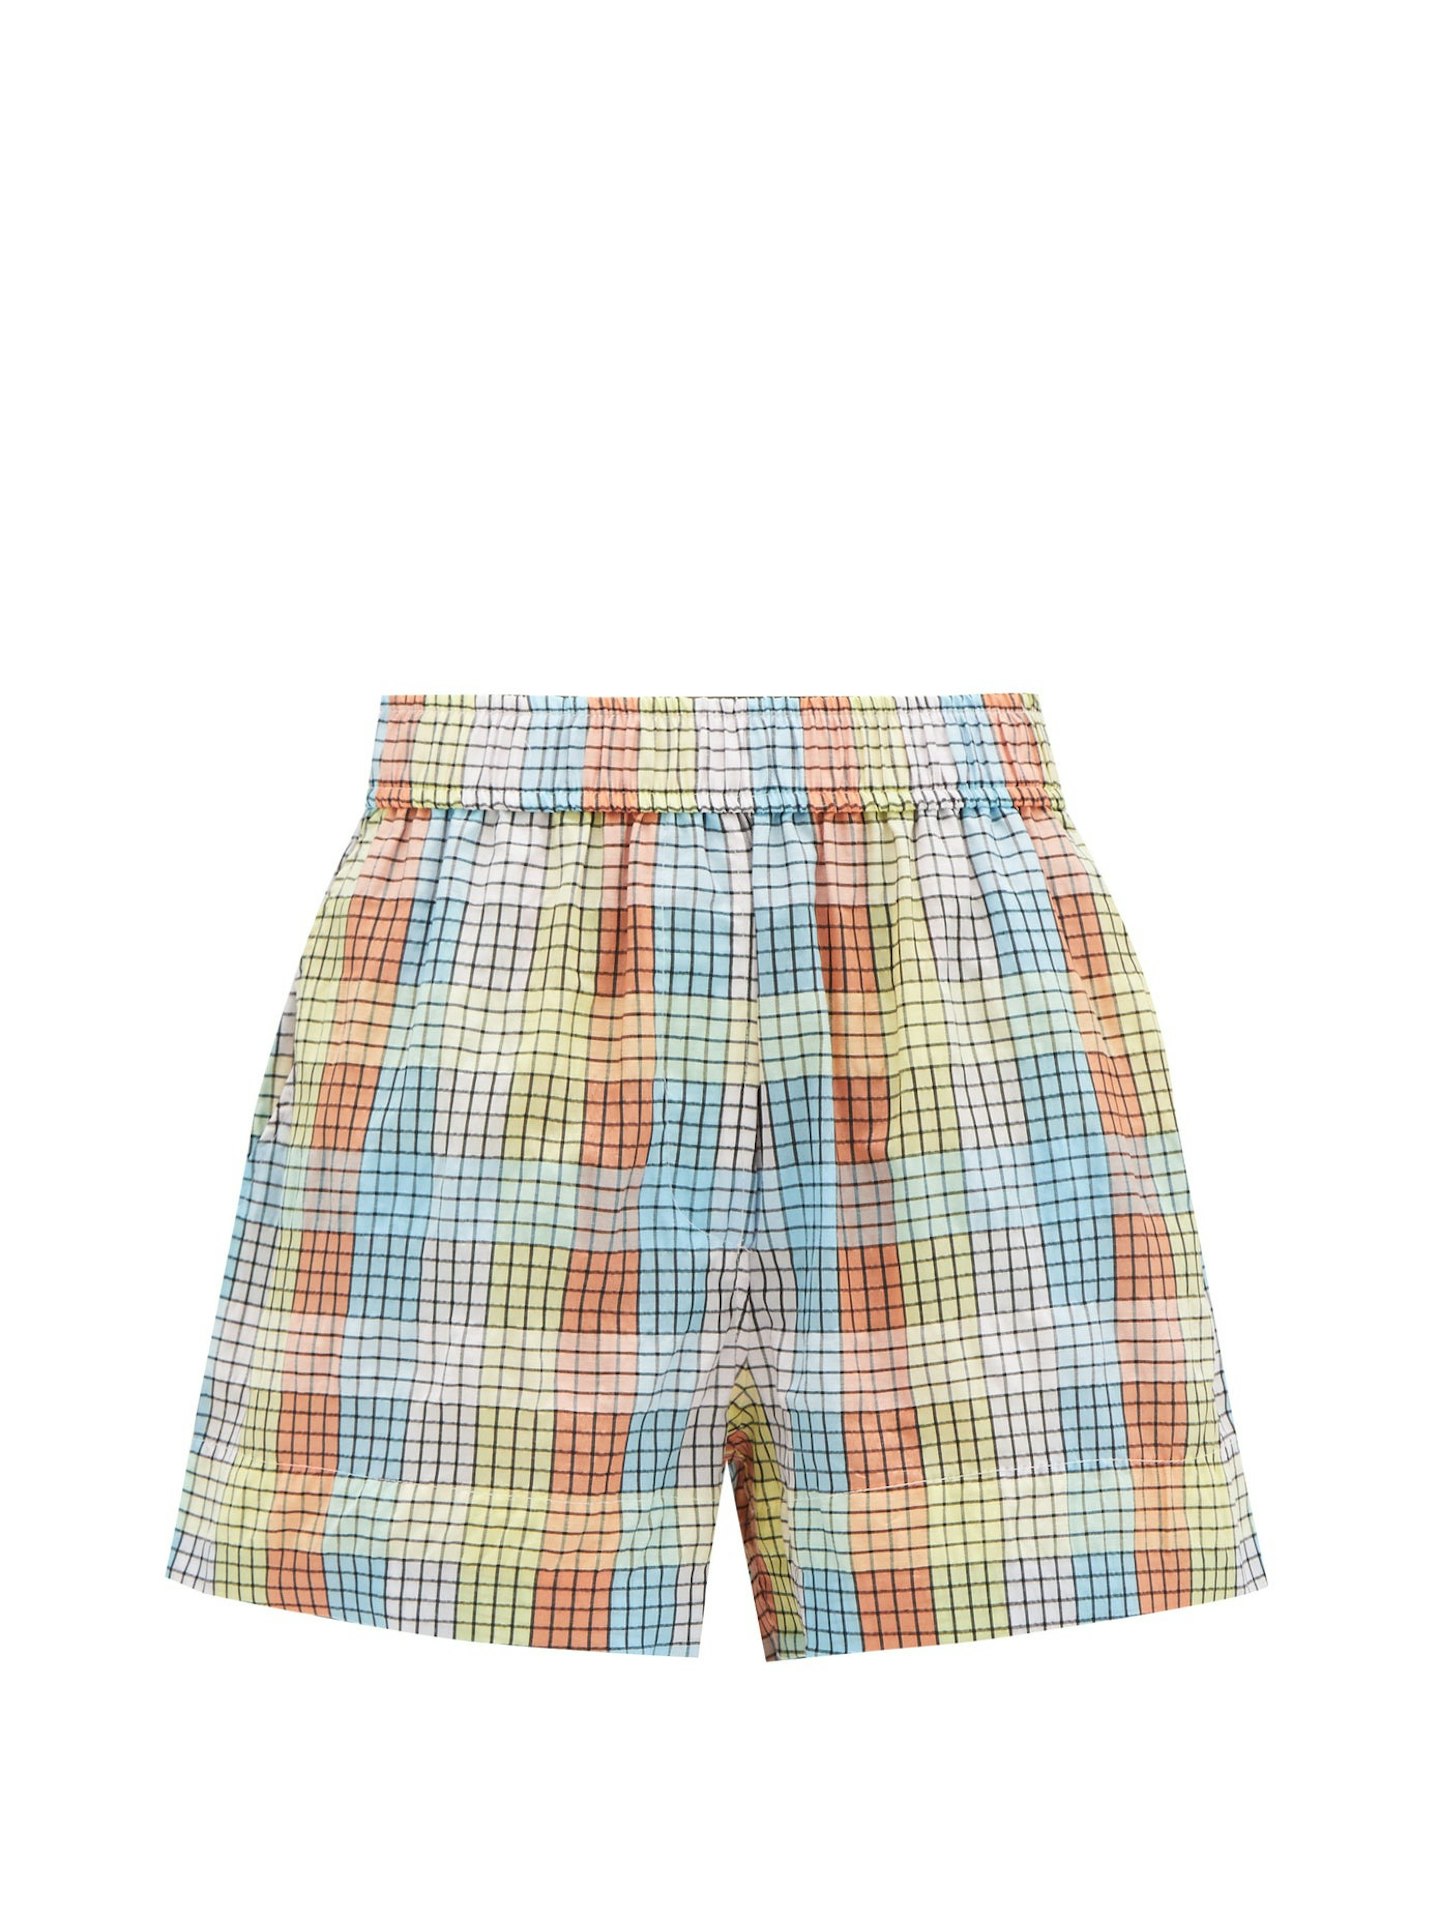 GANNI, Checked cotton-blend seersucker shorts, £115